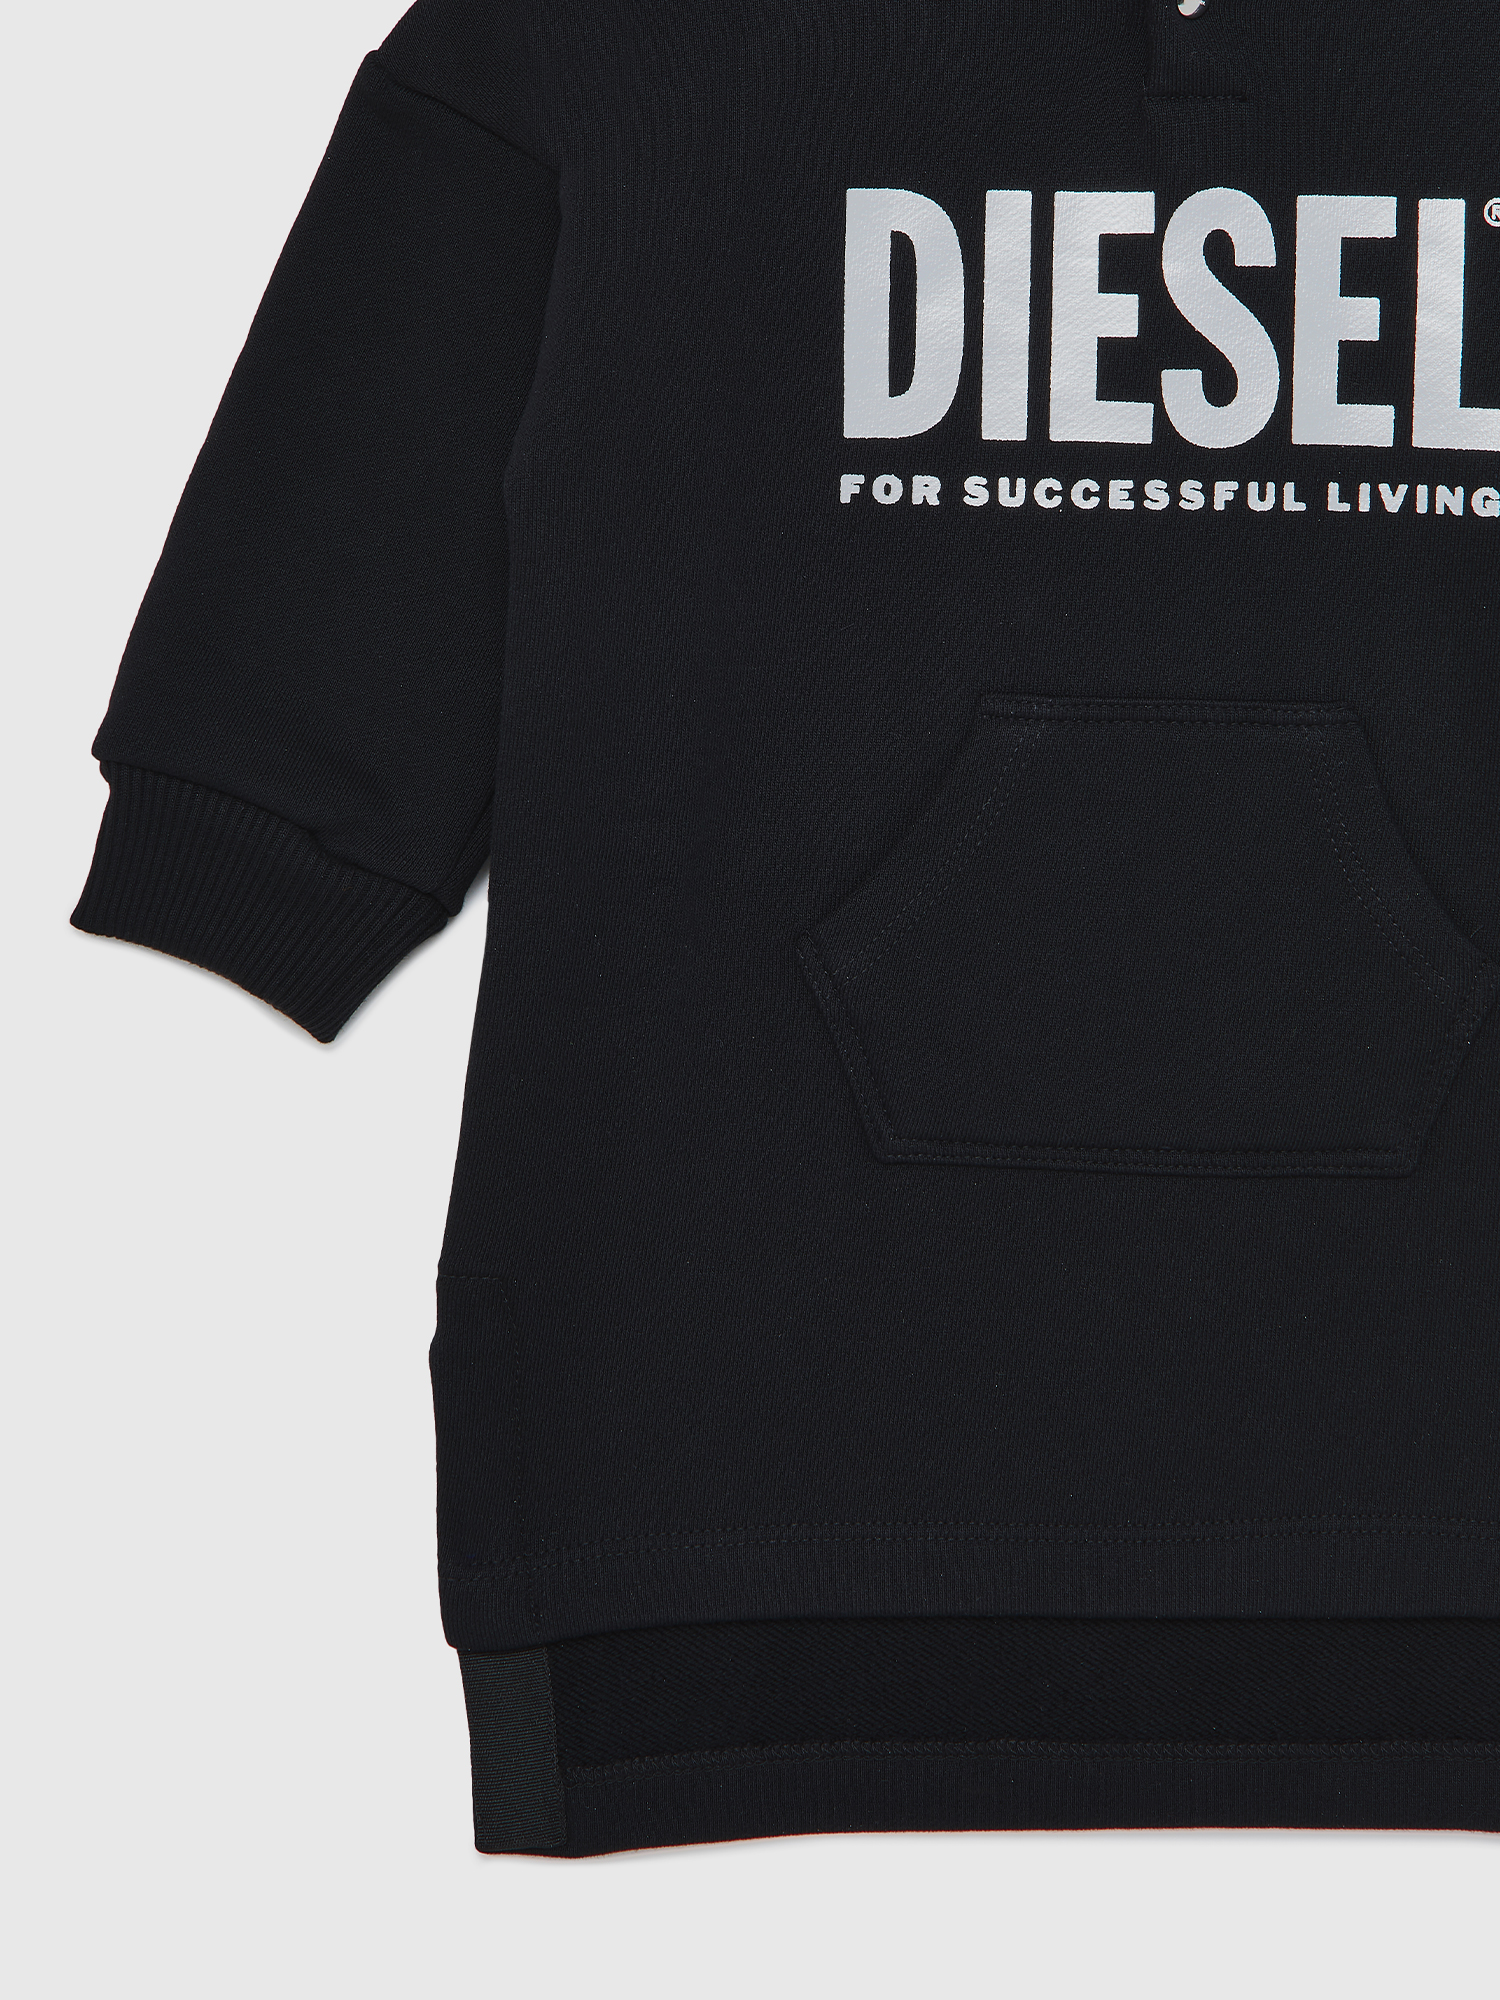 Diesel - DILSETB, Black - Image 4